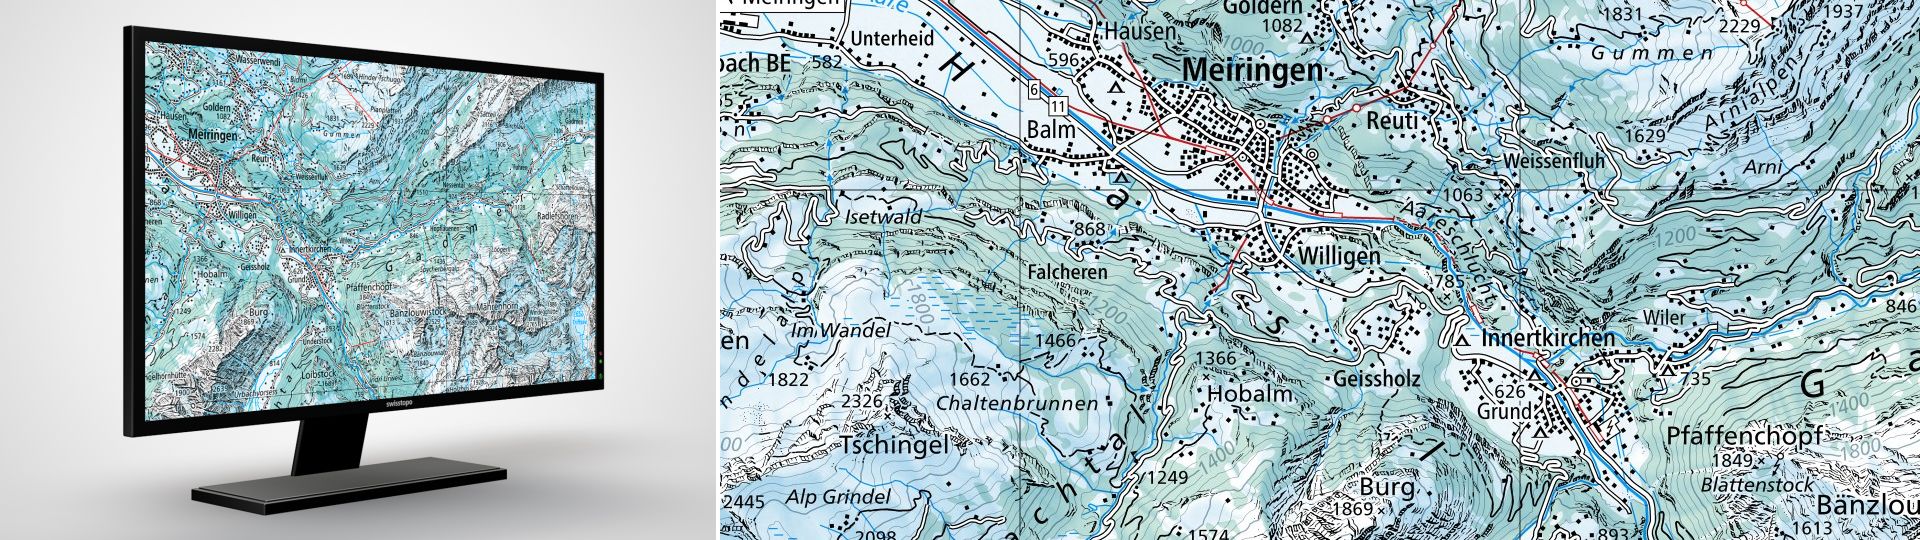 Swiss Map Raster Hiver 100: Swiss Map Raster Hiver 100 est l’édition d’hiver de la carte nationale numérique au 1:100 000 au format raster. 